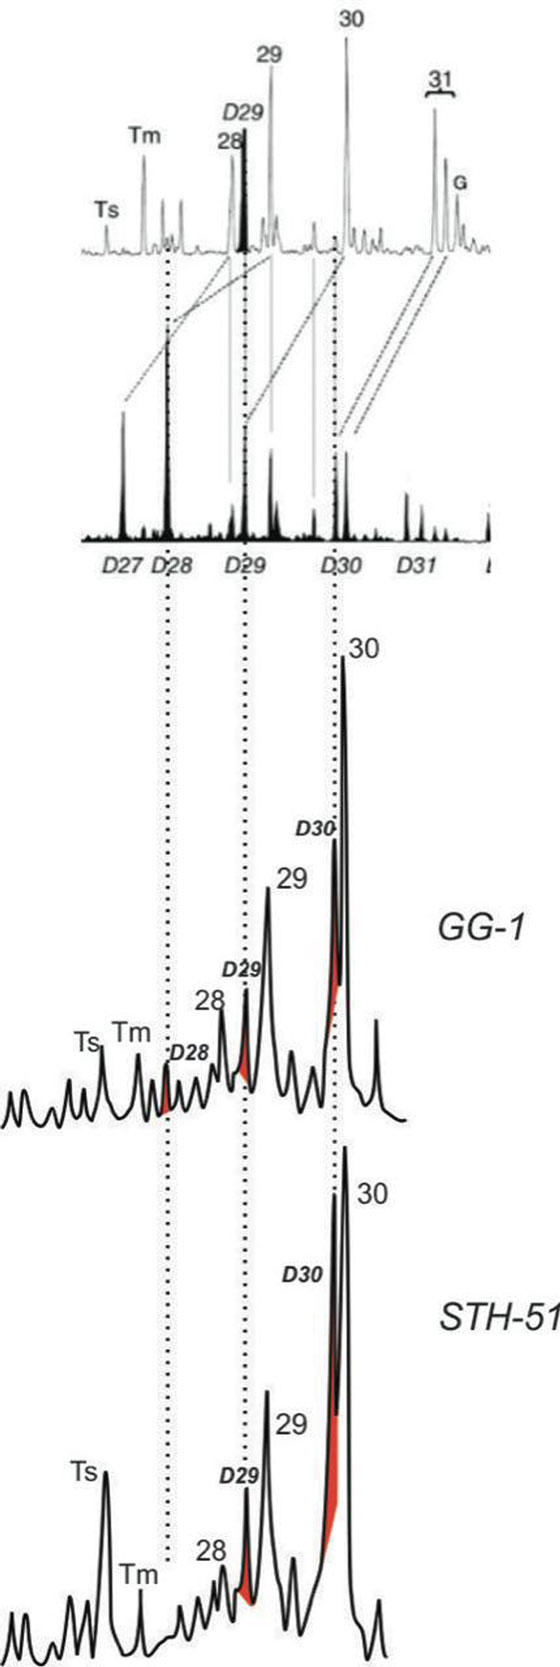 Comparativa de fragmentogramas
m/z 191 correspondientes a los crudos STH-51 y GG-1